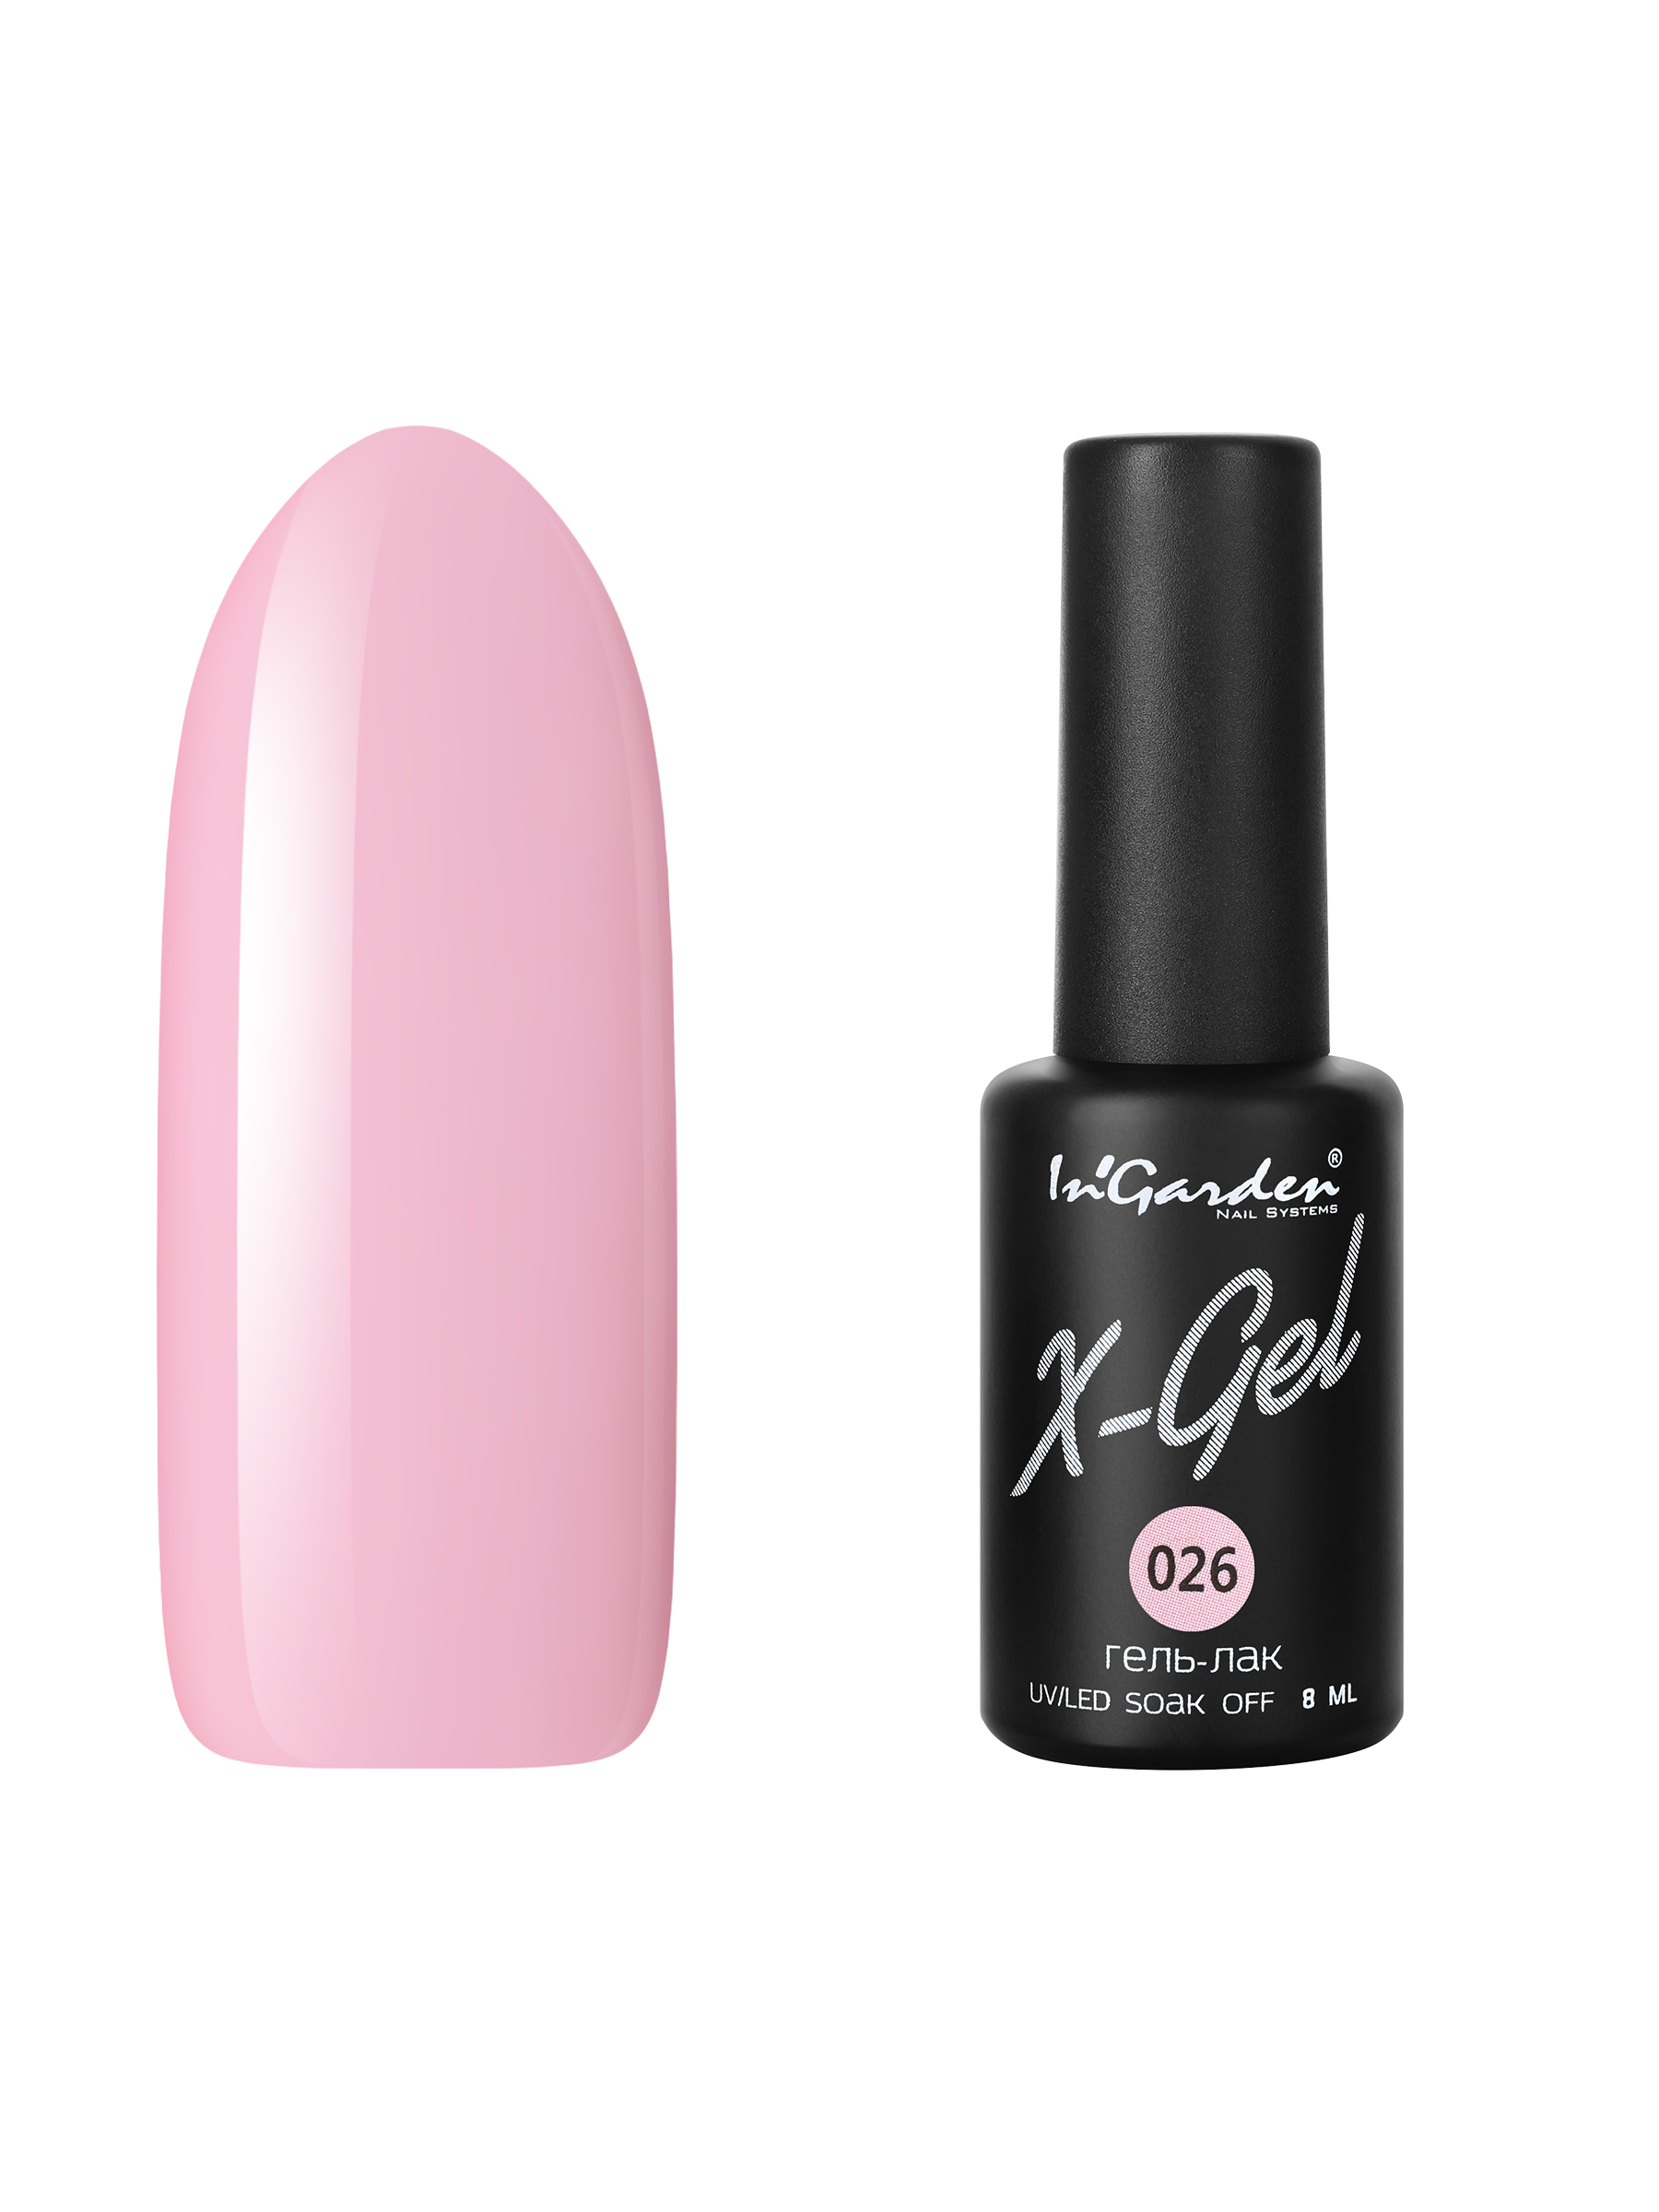 Купить Гель лак для ногтей In’Garden X-Gel N° 26 приглушенный розовый плотный 8 мл, In'Garden